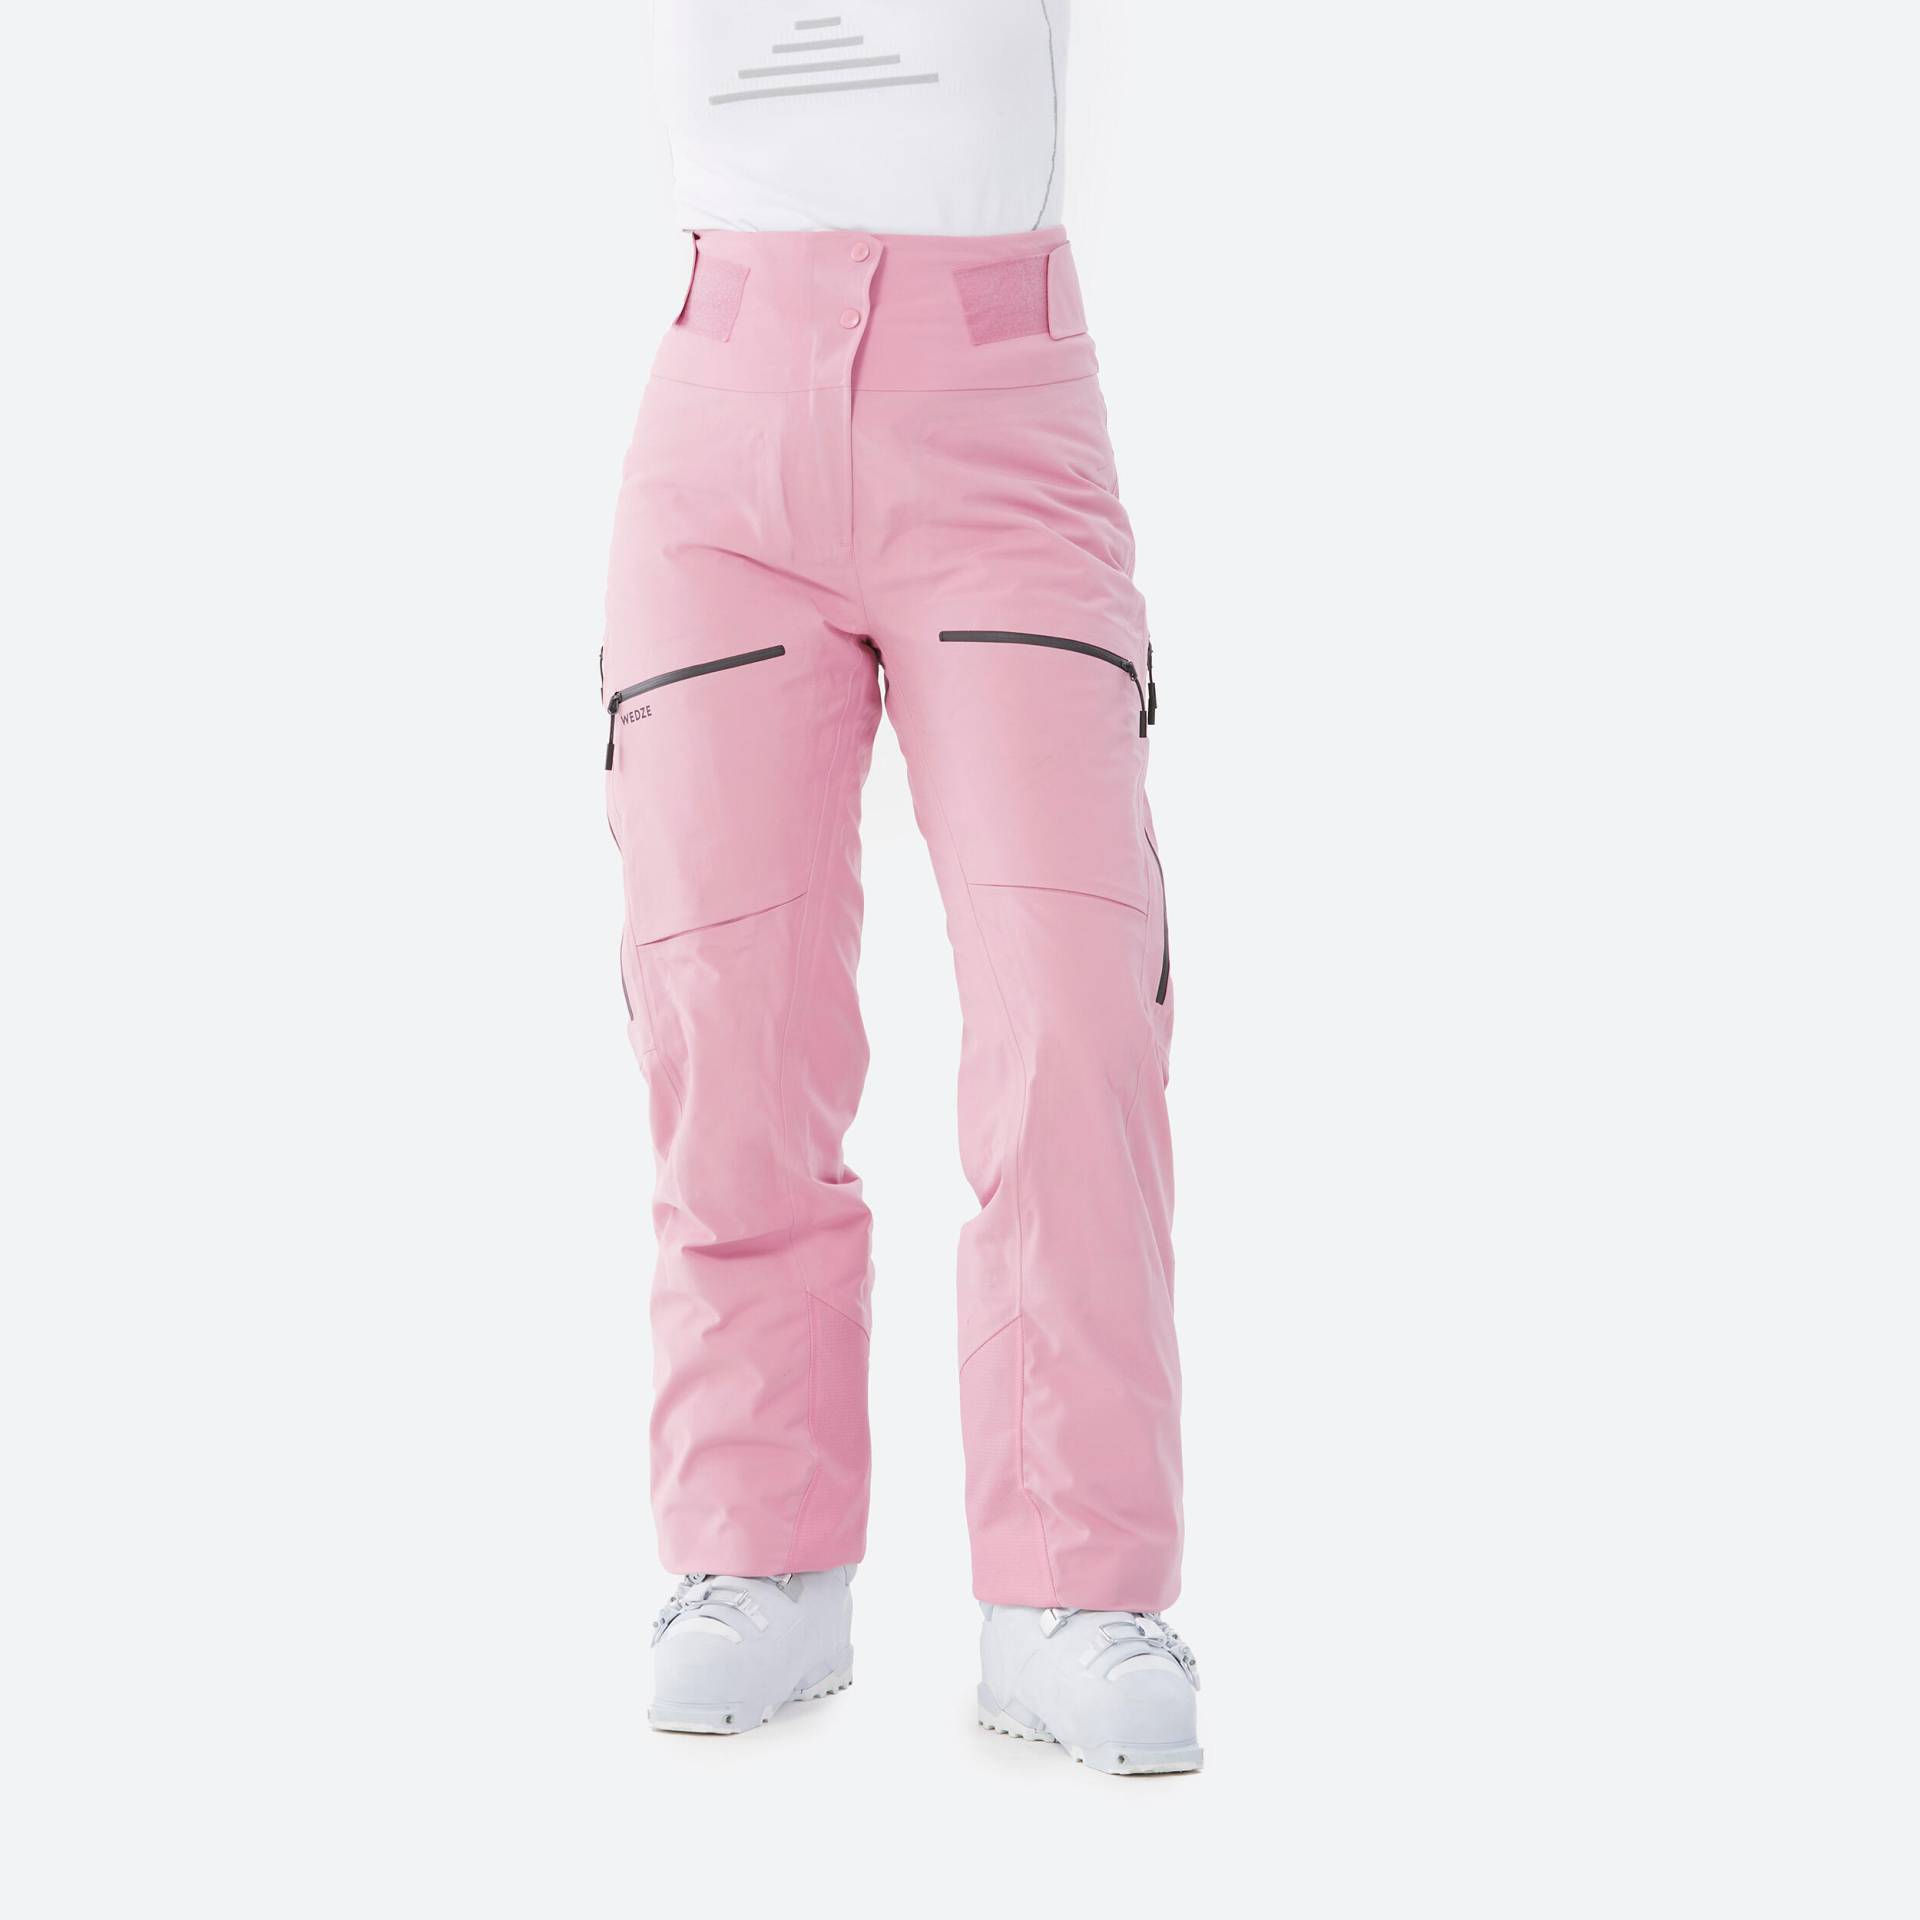 Skihose Damen - FR500 rosa von WEDZE